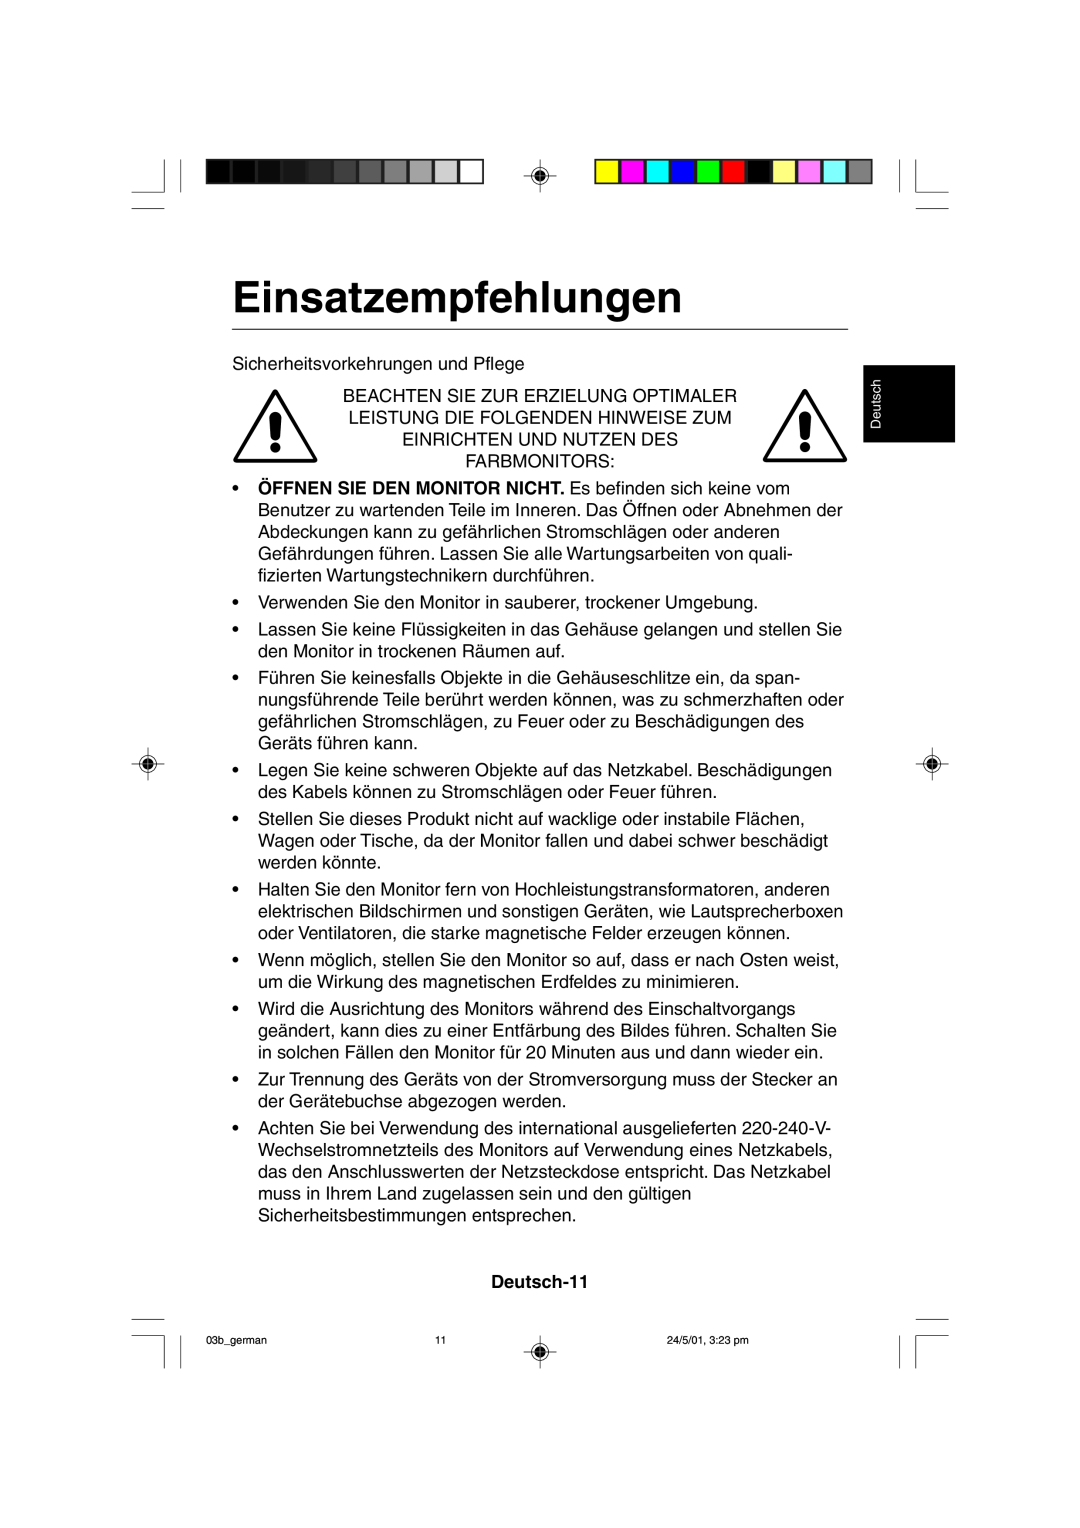 Mitsubishi Electronics M557 user manual Einsatzempfehlungen, Deutsch-11 